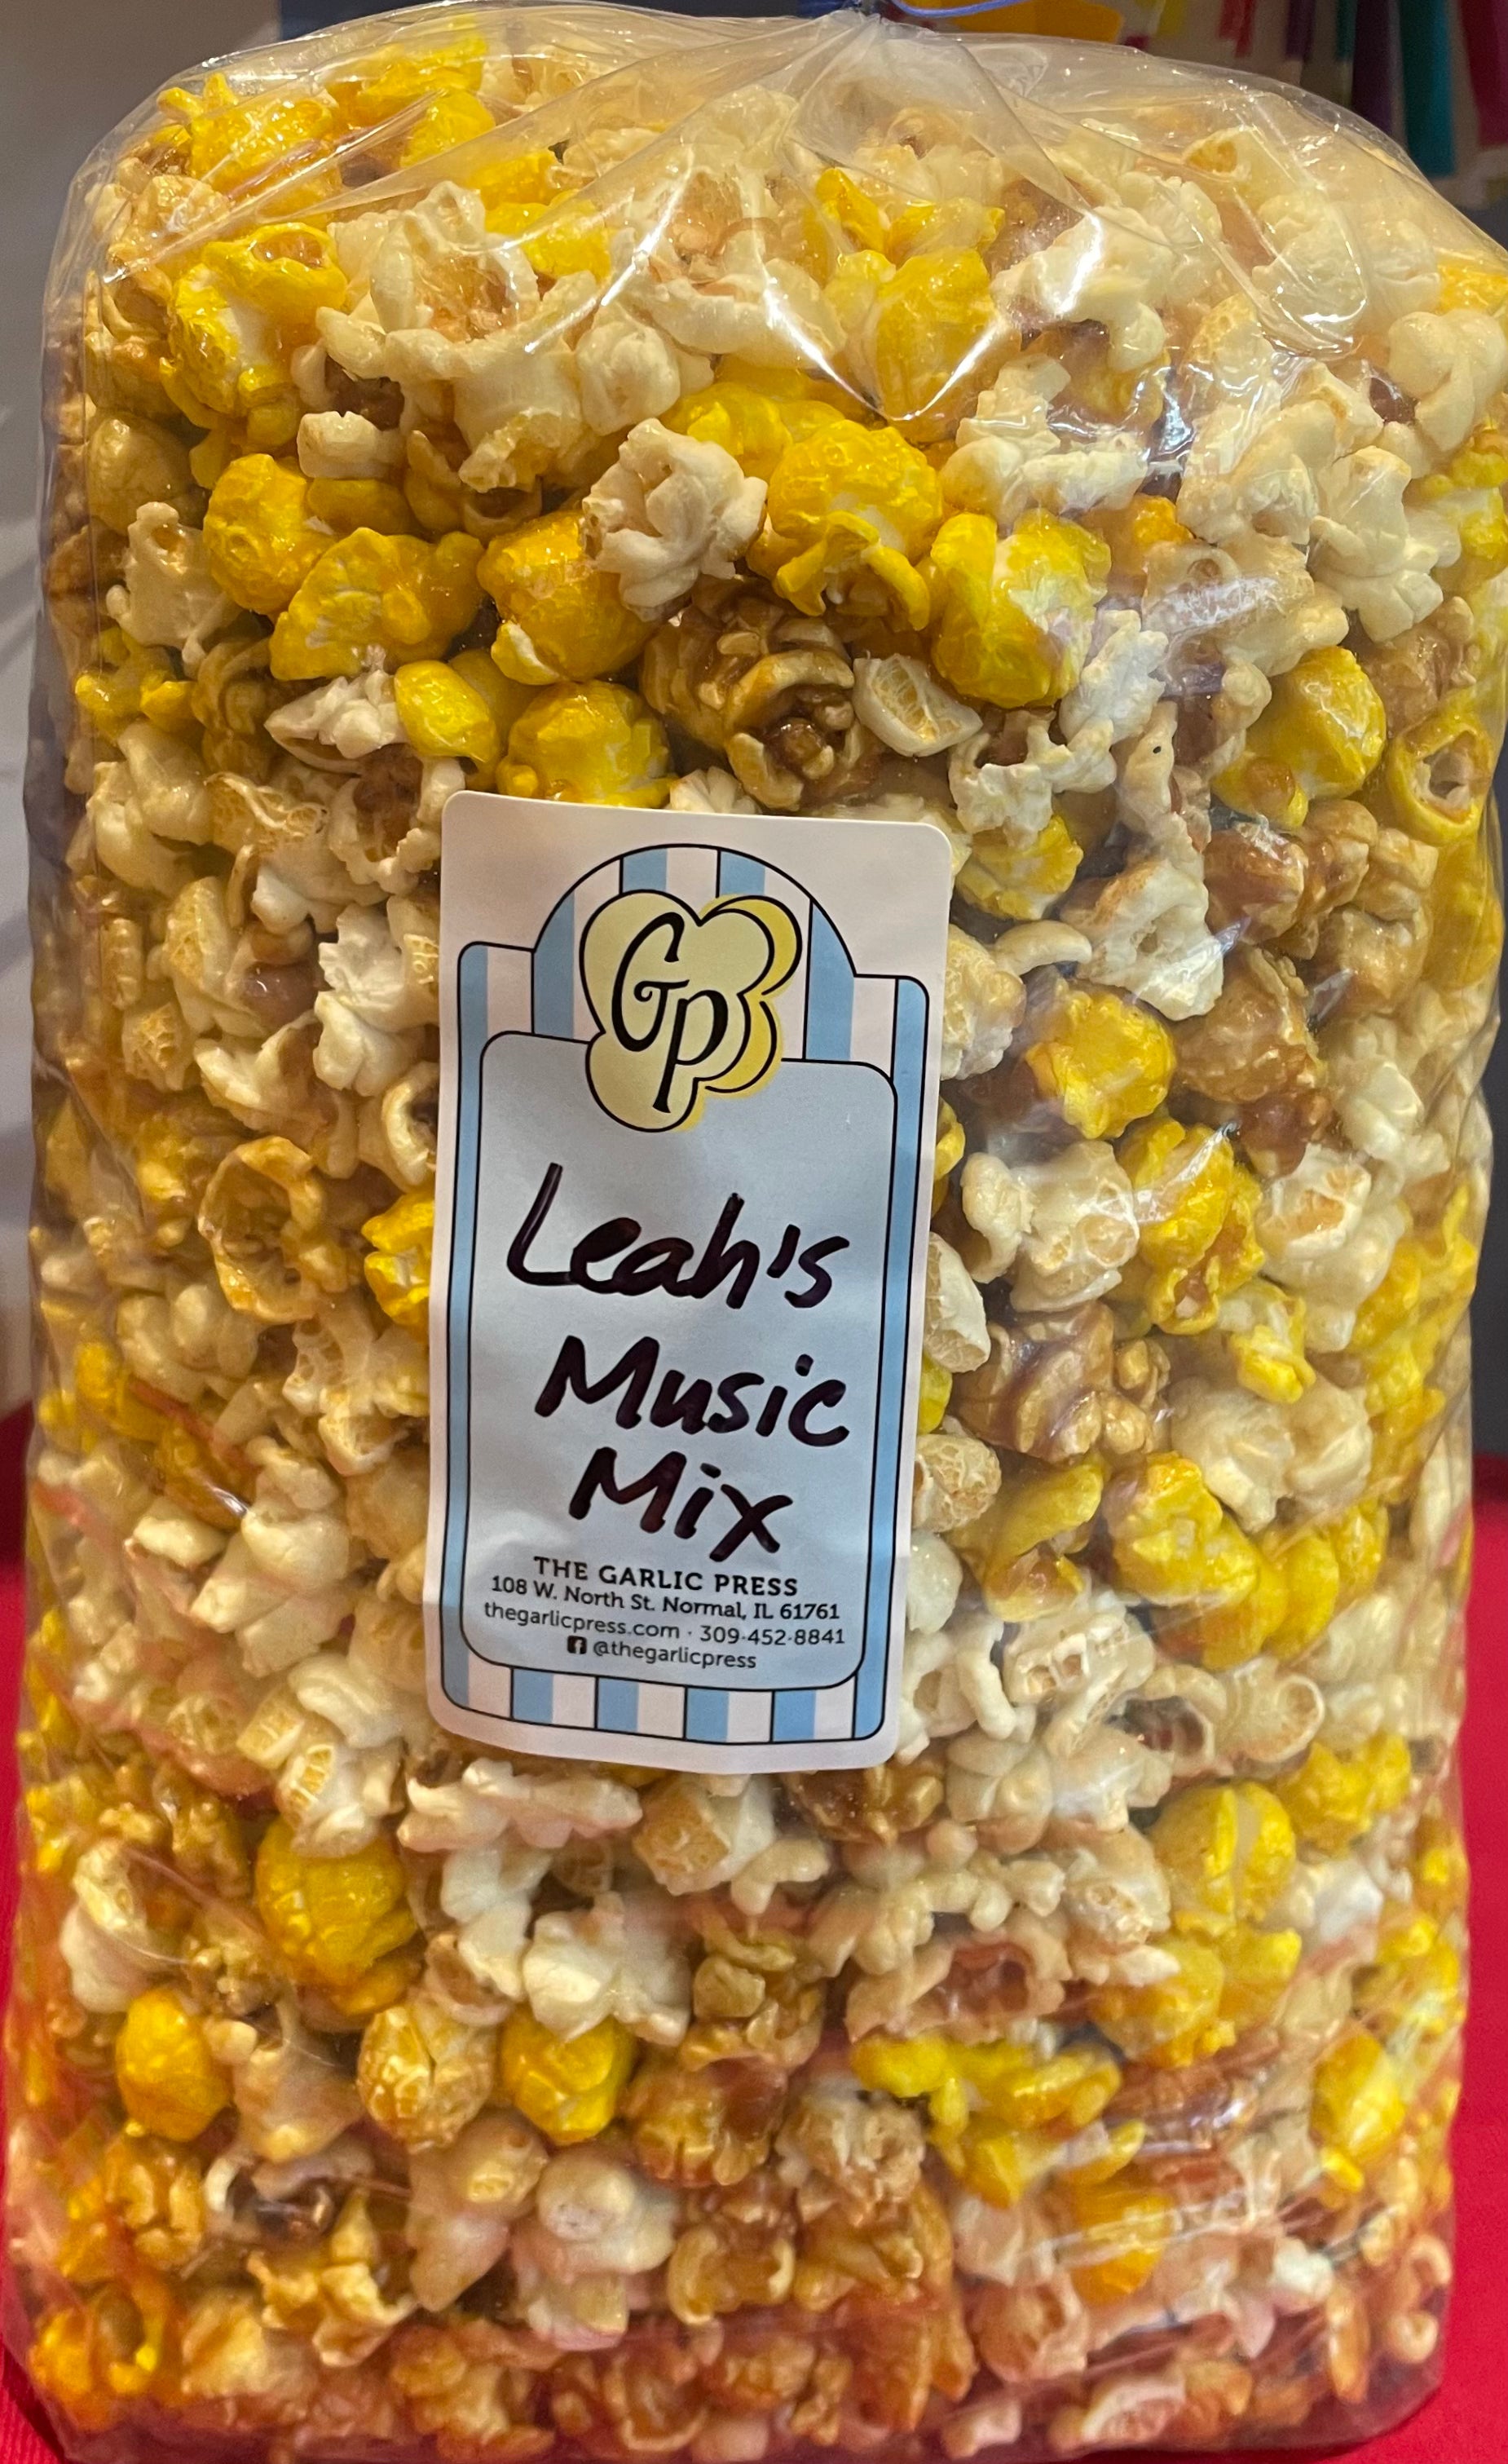 Leah's Music – The Garlic Press, Inc.